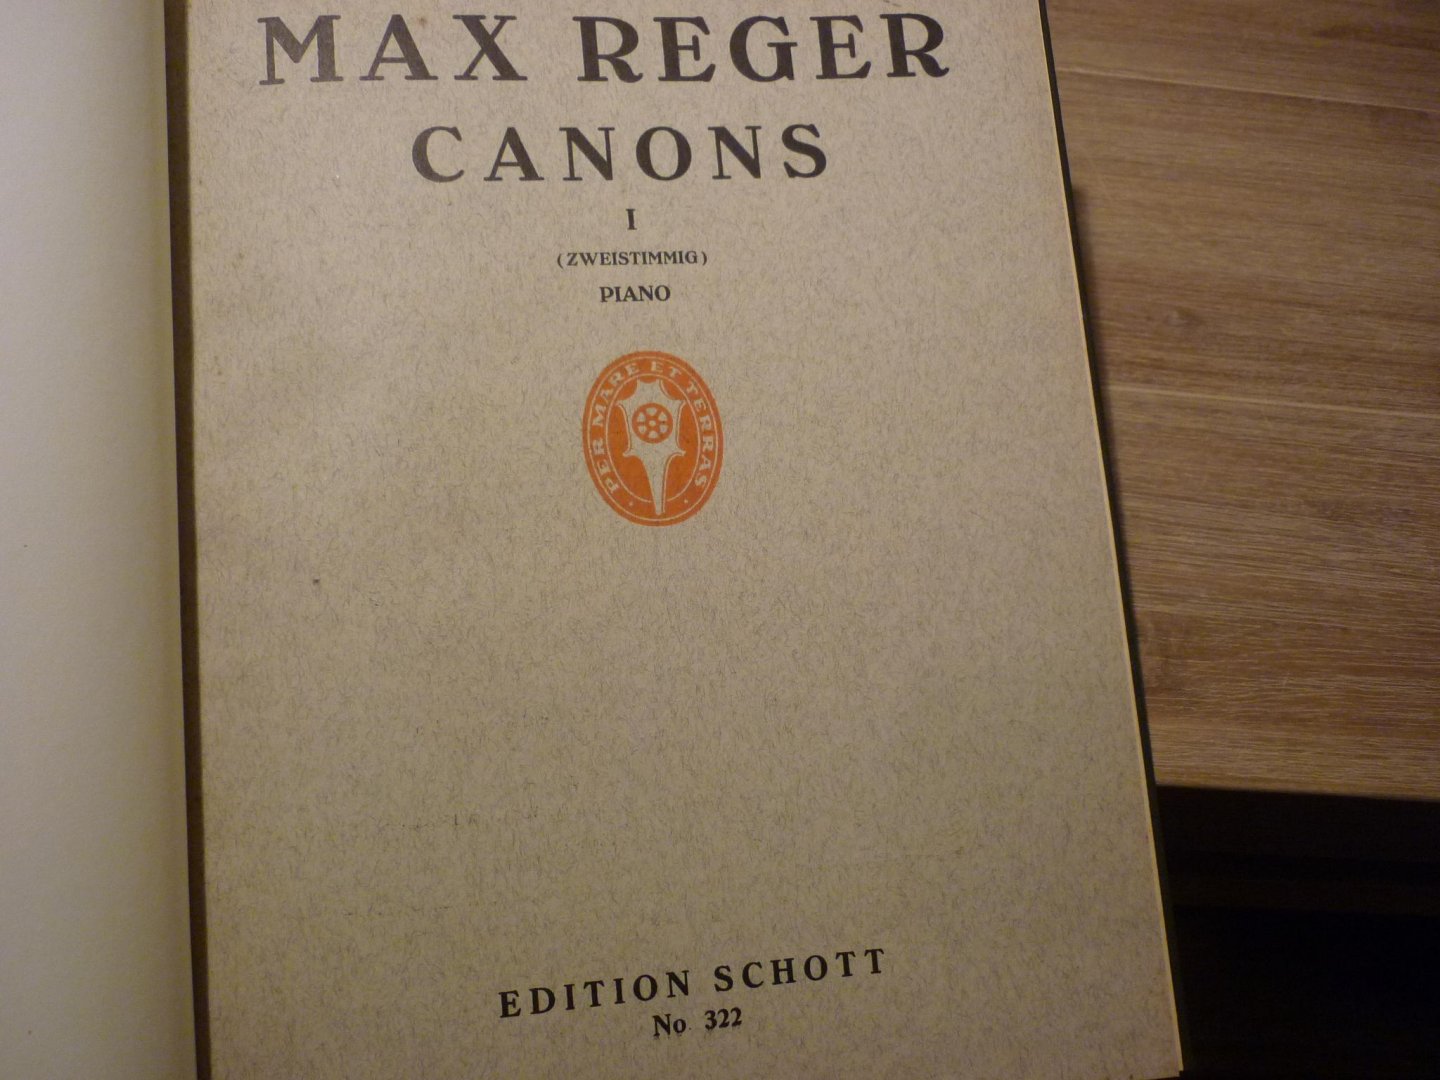 Reger; Max (1873 - 1916) - Canons - Heft I (zweistimmig) en Heft II (dreistimmig) - Piano